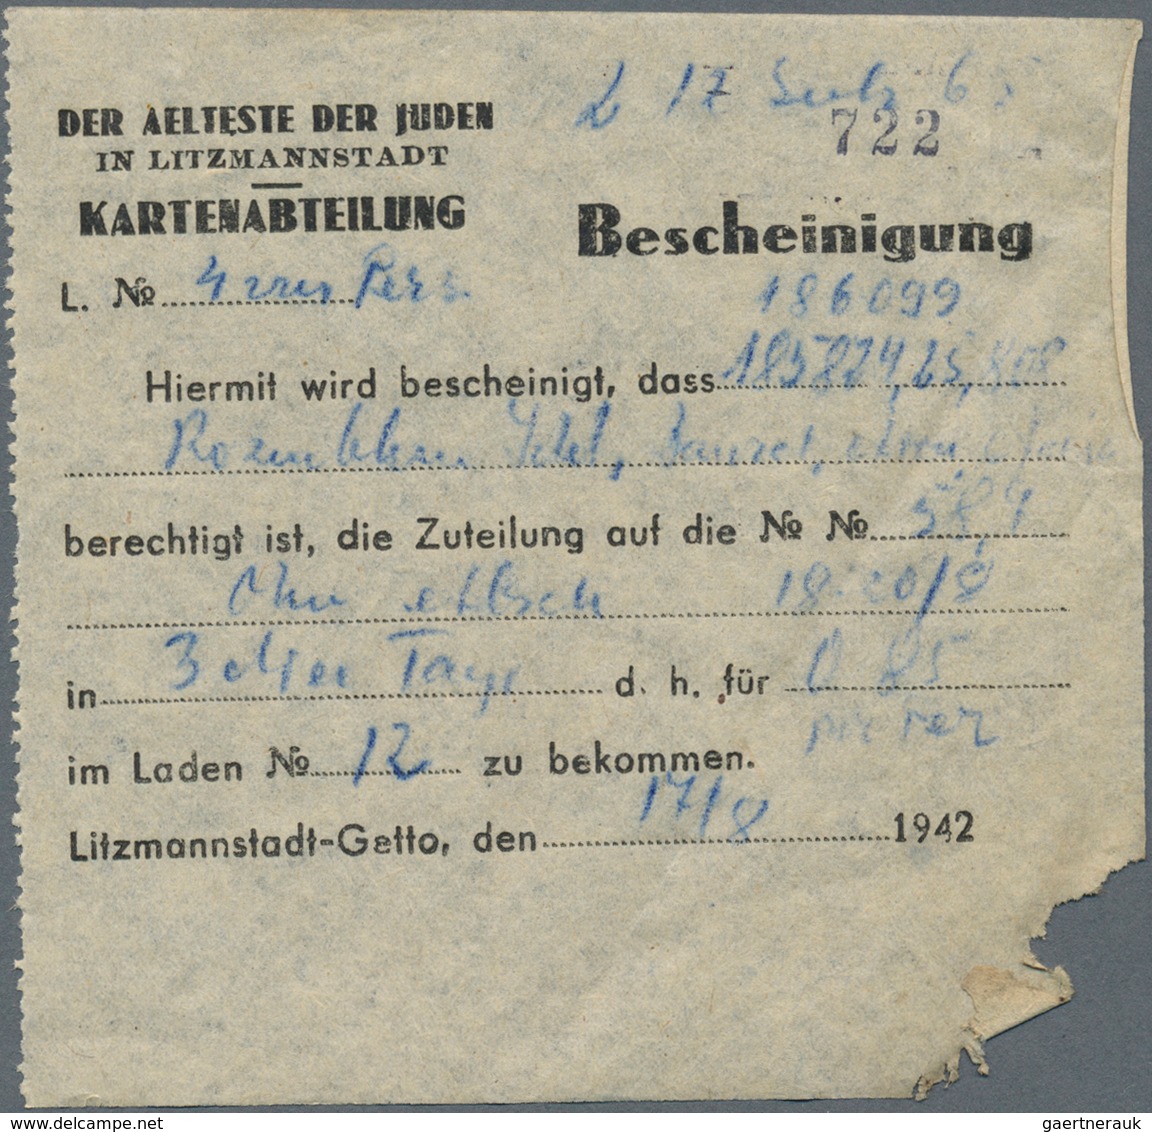 Deutschland - Konzentrations- und Kriegsgefangenenlager: Litzmannstadt Ghetto, Posten mit 10 Rations